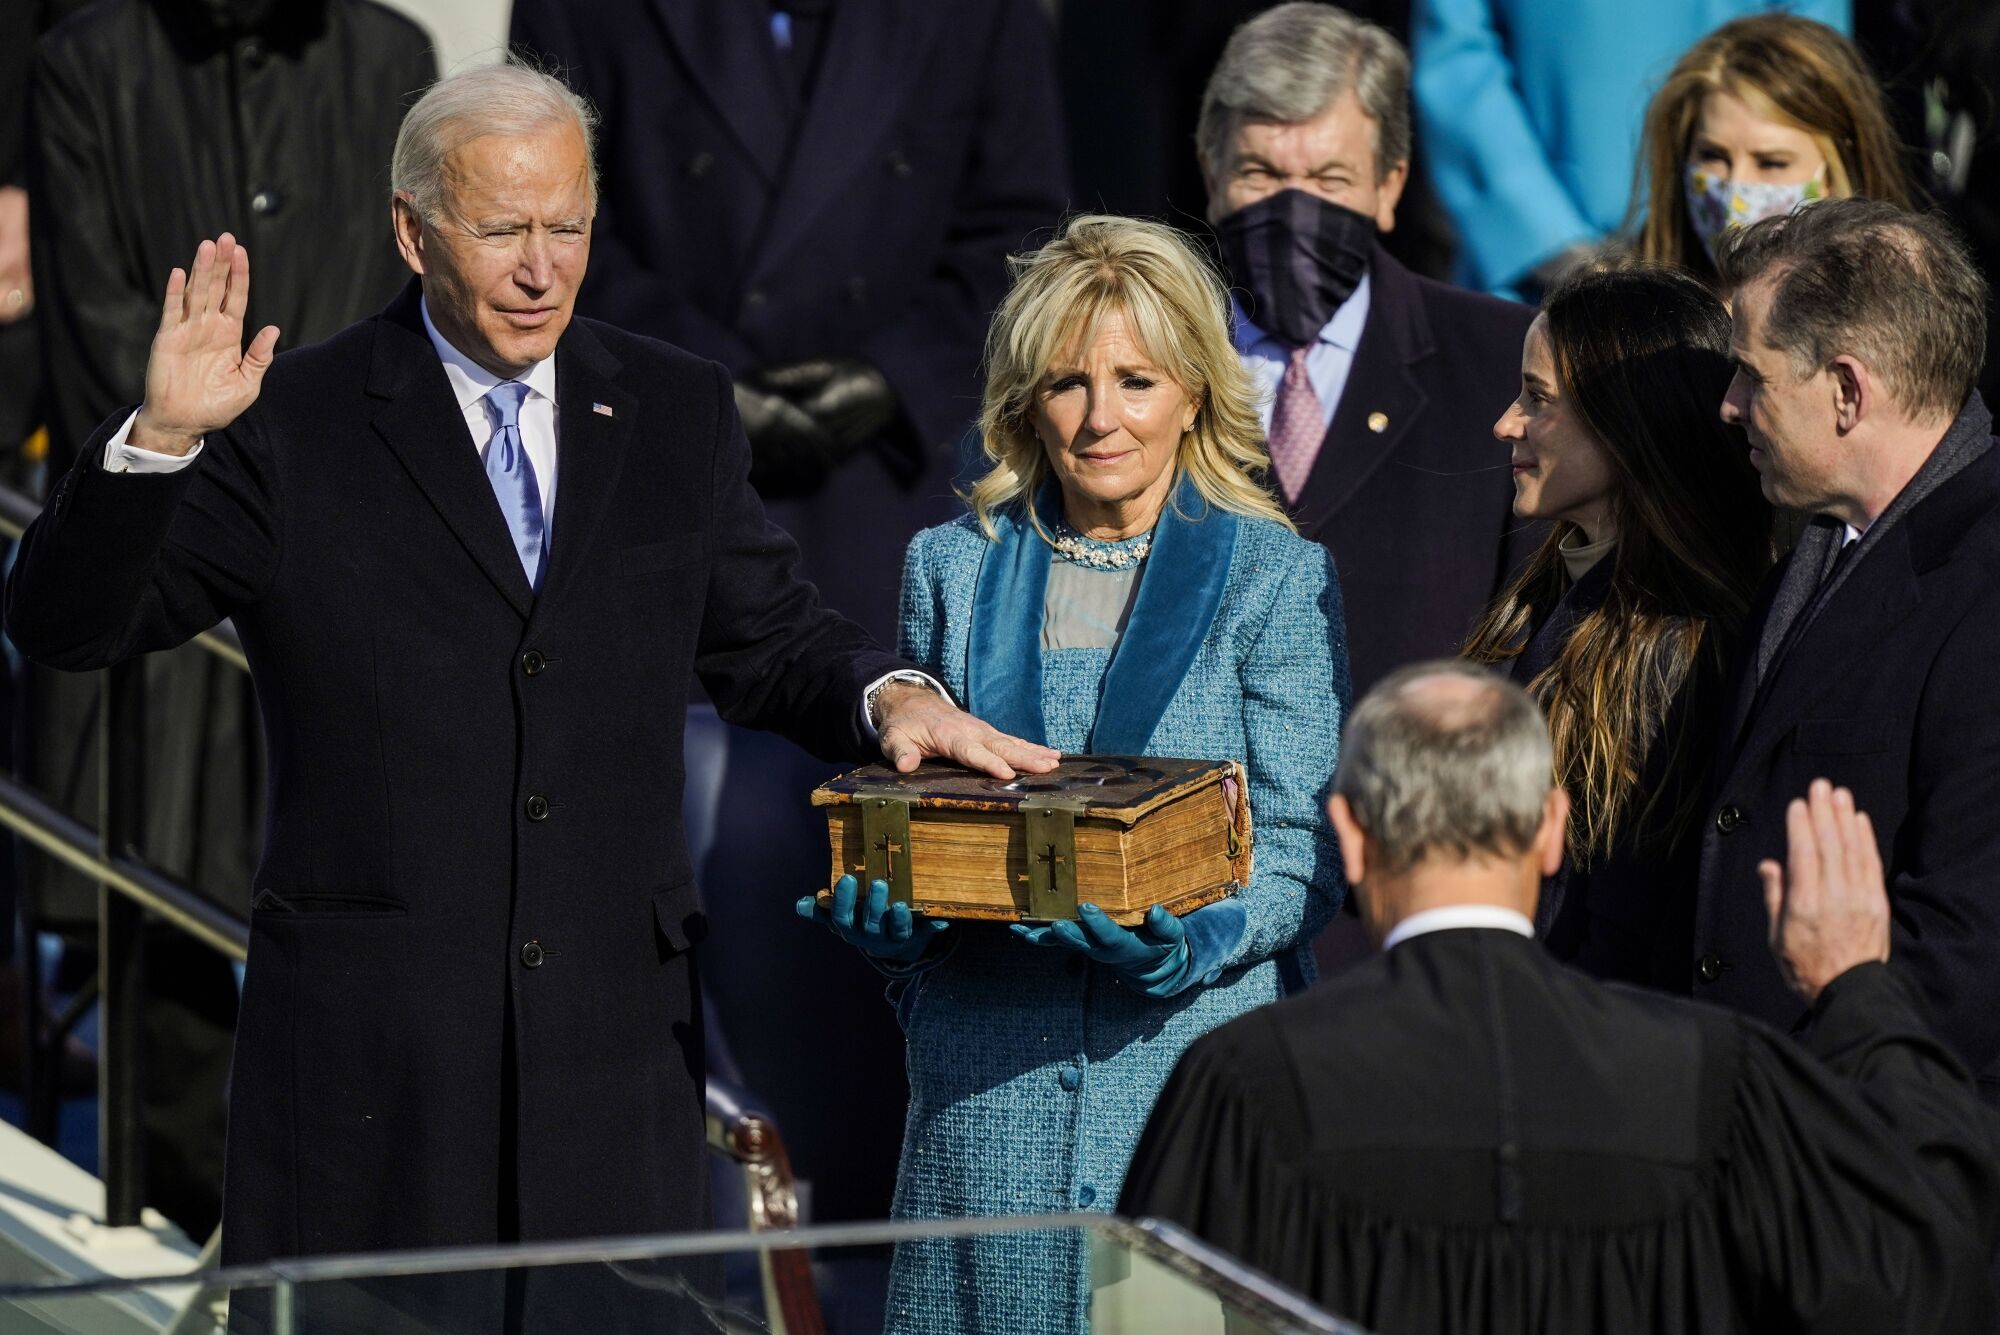 Joe Biden is sworn in as president